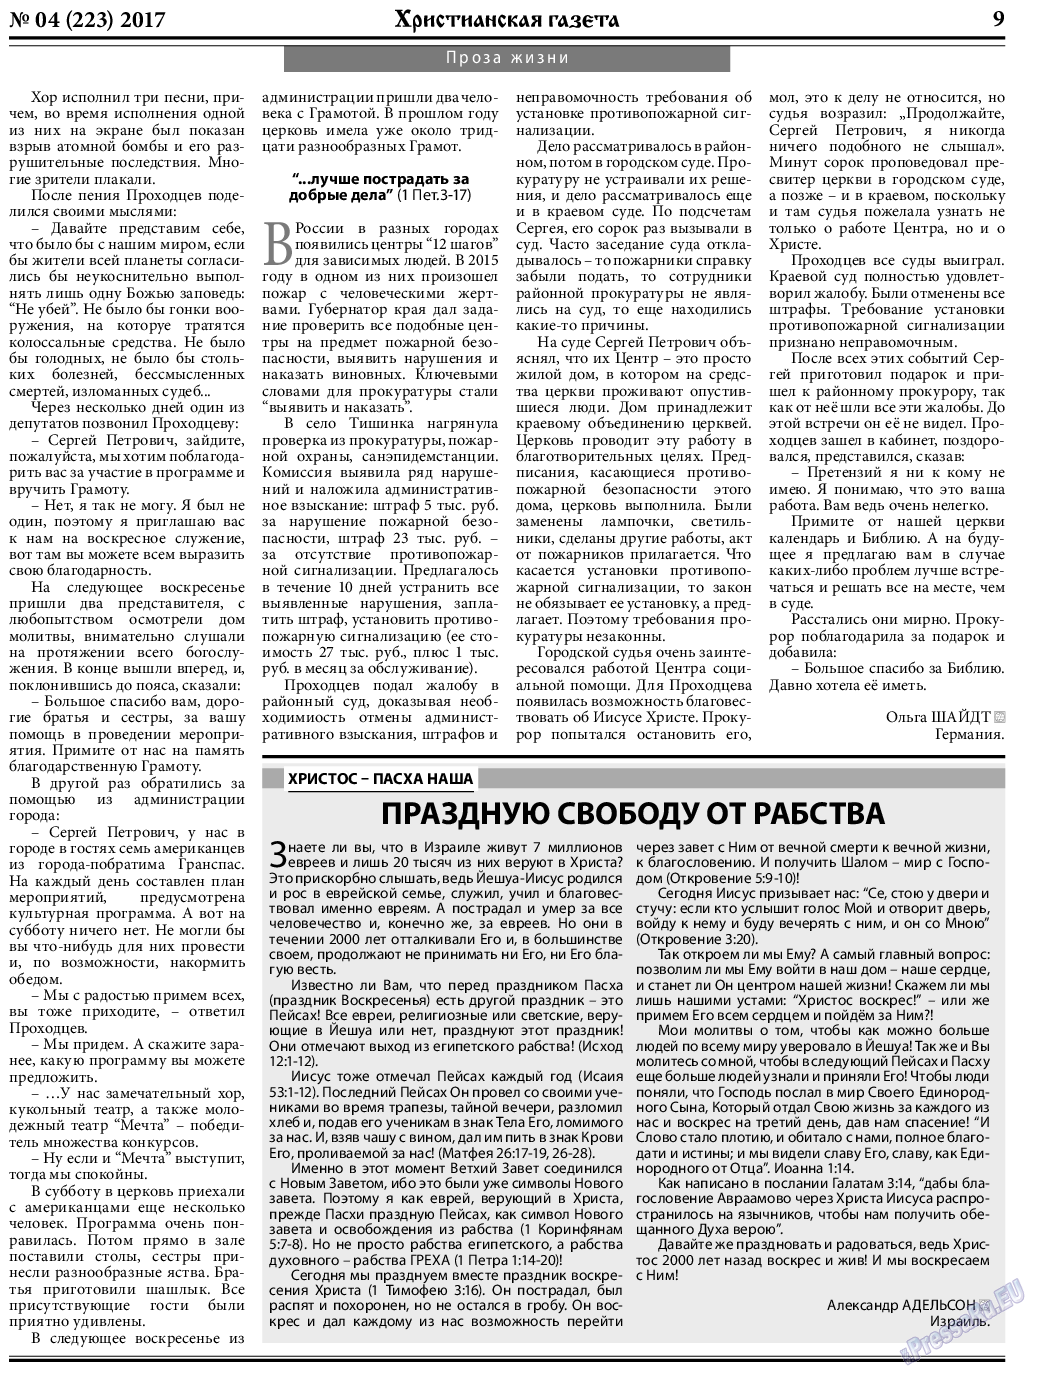 Христианская газета (газета). 2017 год, номер 4, стр. 9